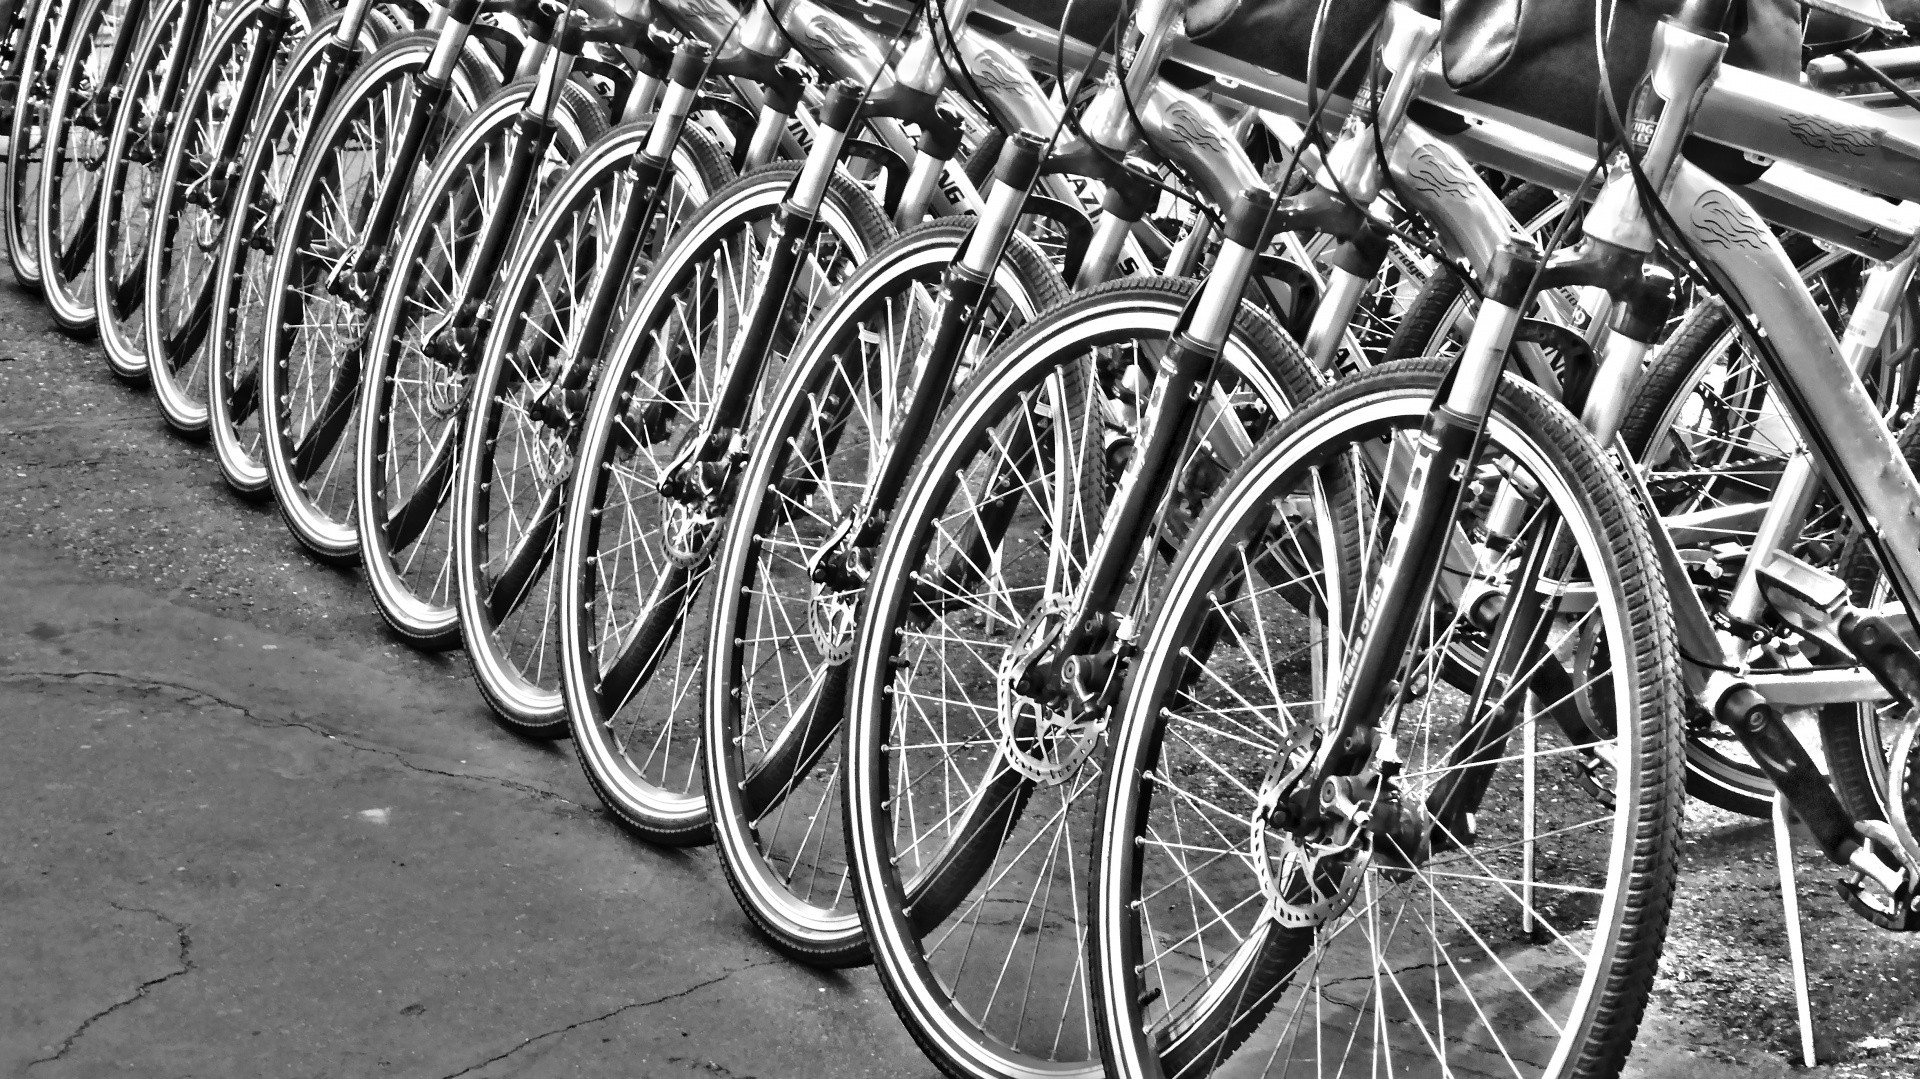 Sor kerékpárok